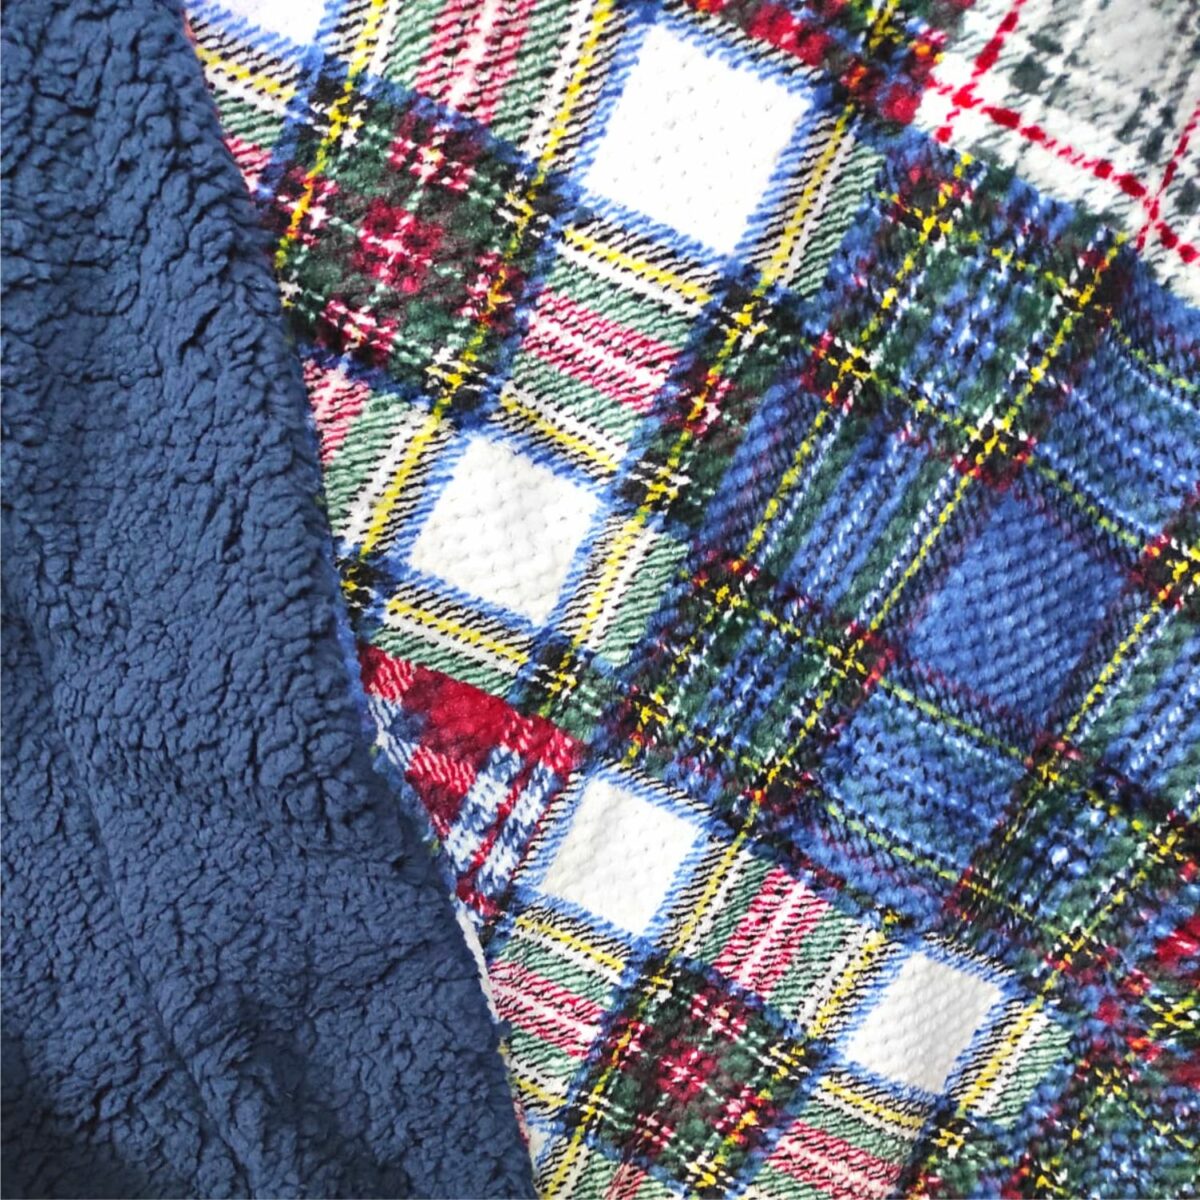 coperta-bubble-tartan-scozzese-calda-morbida-invernale-con-sherpa-dettaglio